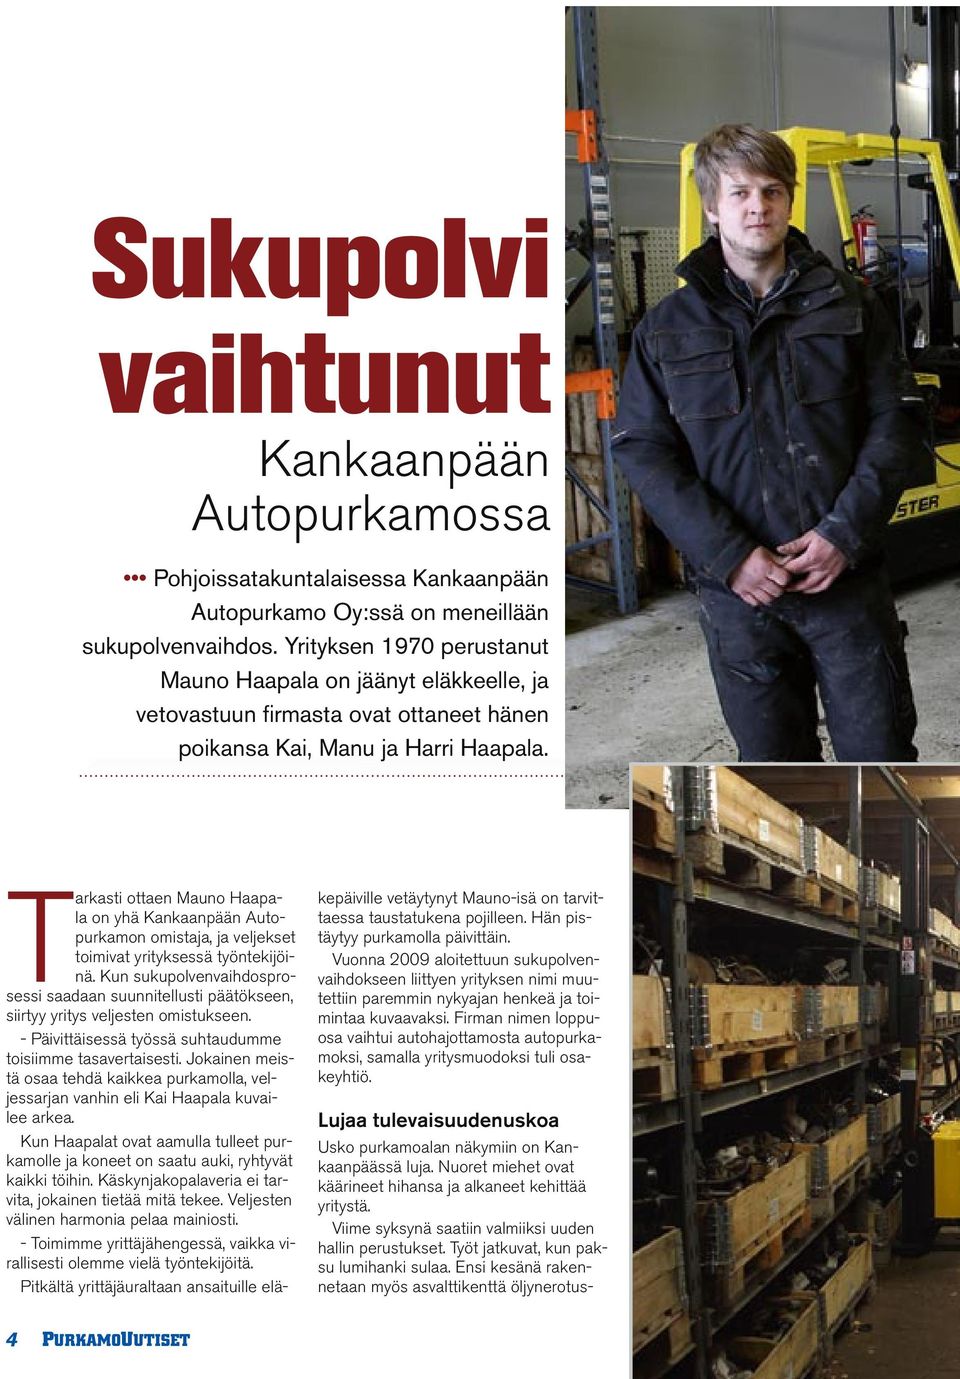 Tarkasti ottaen Mauno Haapala on yhä Kankaanpään Autopurkamon omistaja, ja veljekset toimivat yrityksessä työntekijöinä.